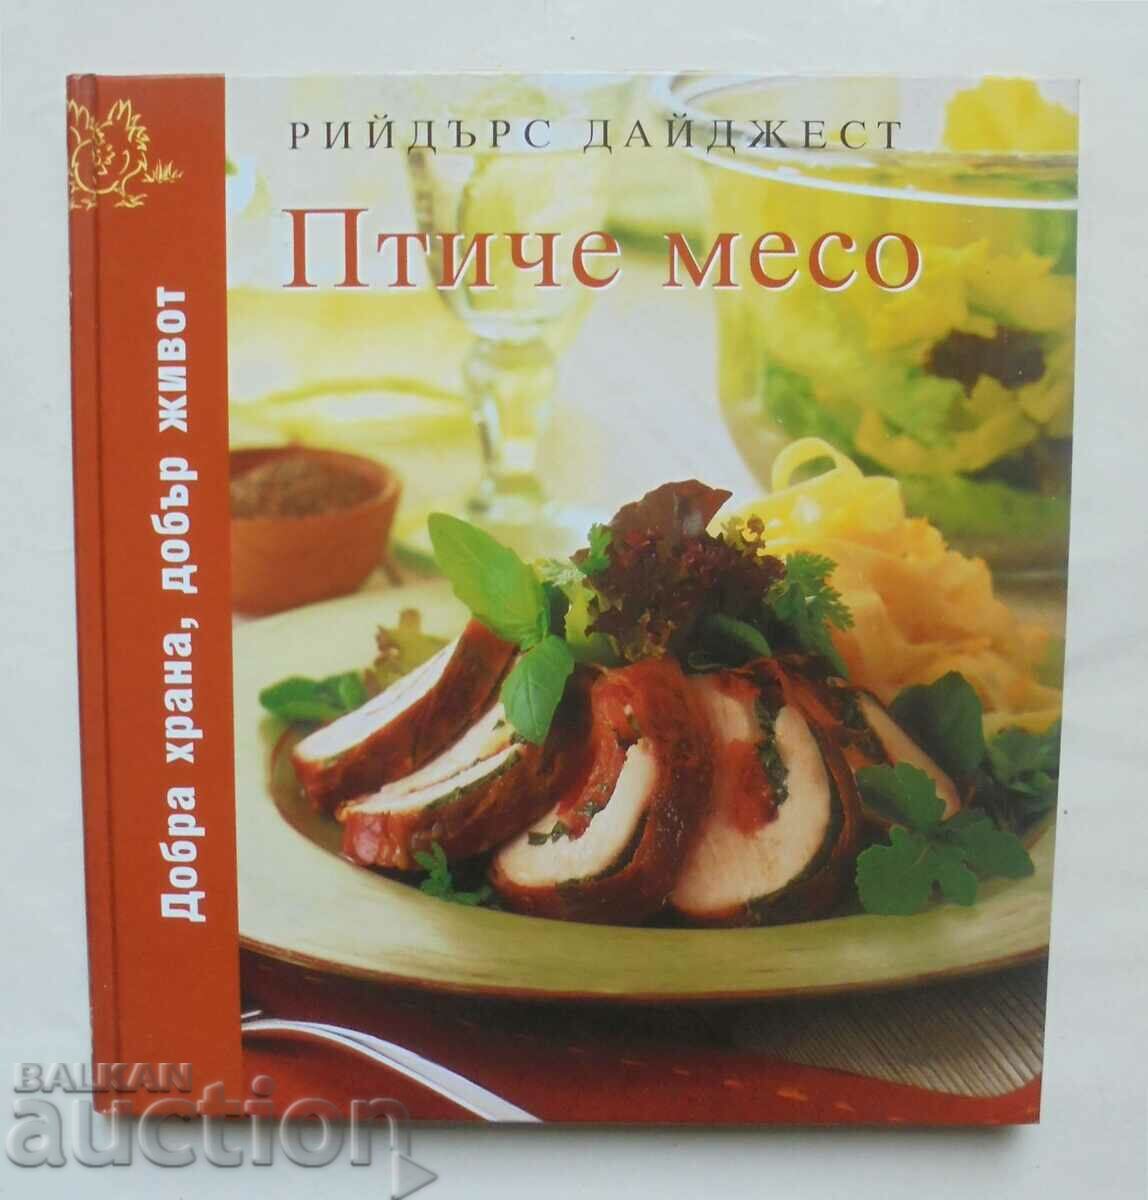 Poultry Cookbook 2008 Reader's Digest